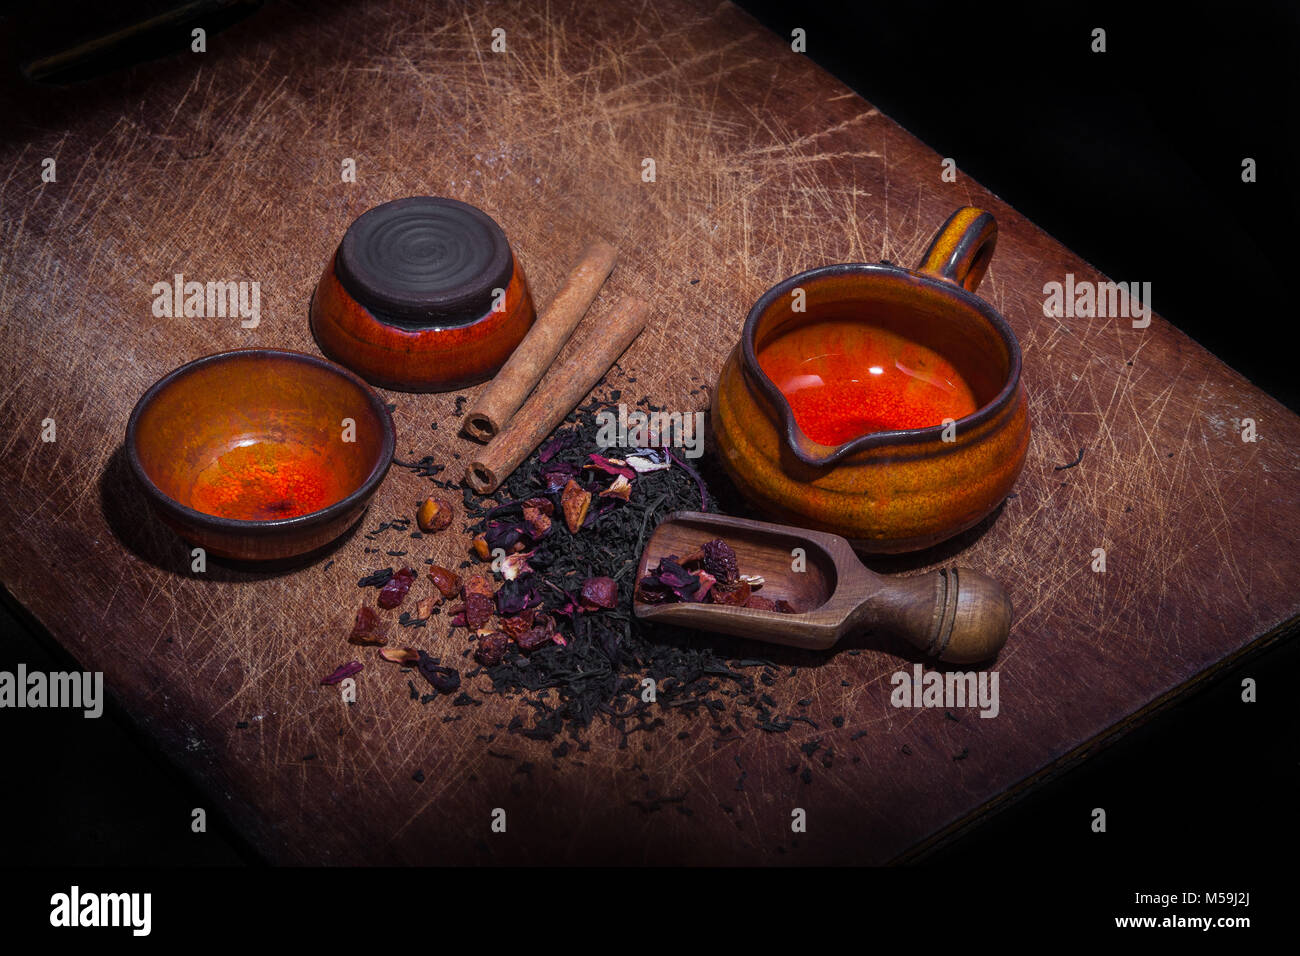 Kandierte Früchte und Zimt zu schwarzem Tee Blätter hinzugefügt - vintage Bild Stockfoto